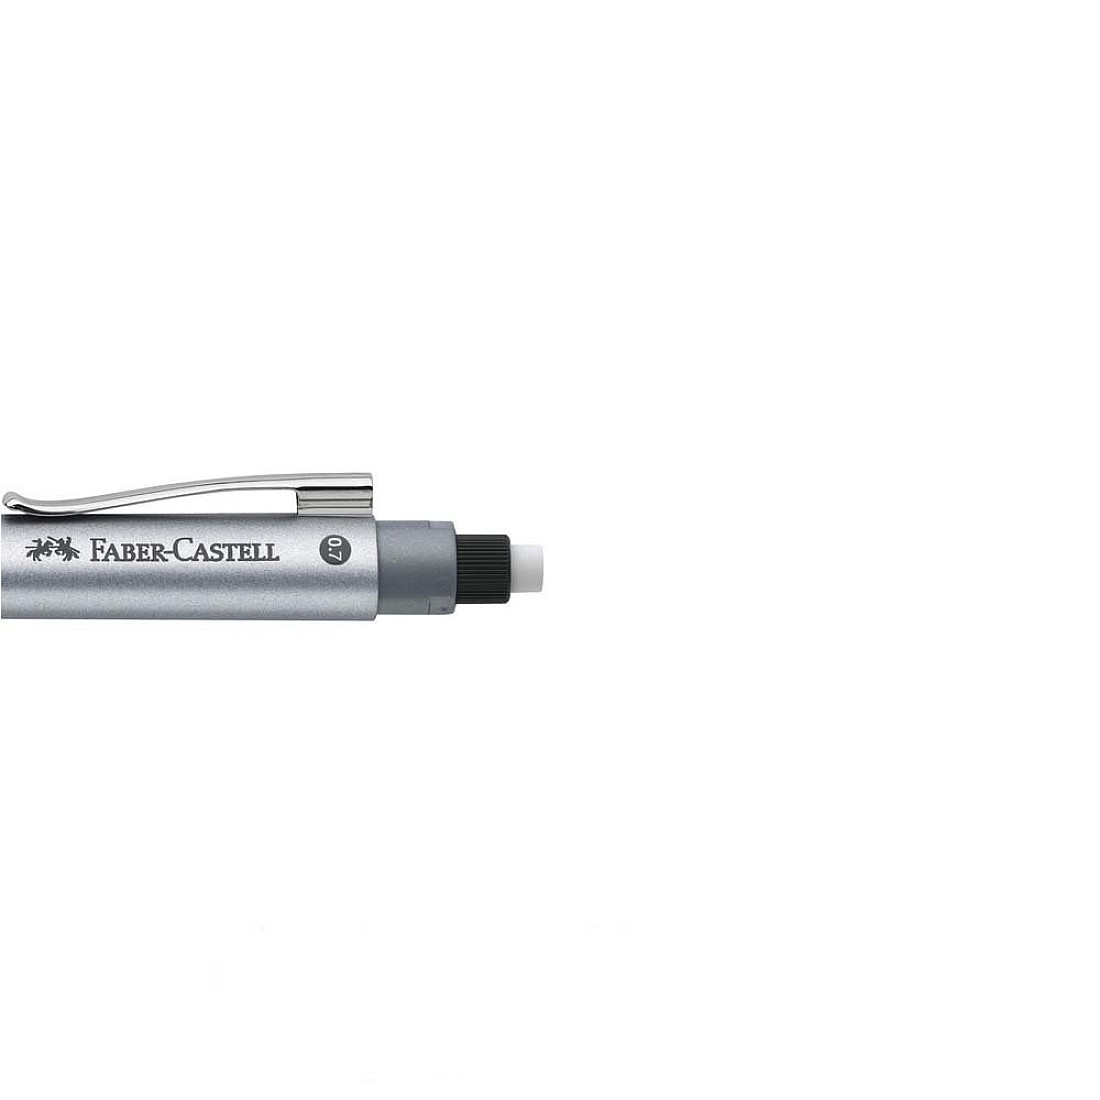 Faber-Castell Grip 2011 Blue Mechanical pencil 0.7mm